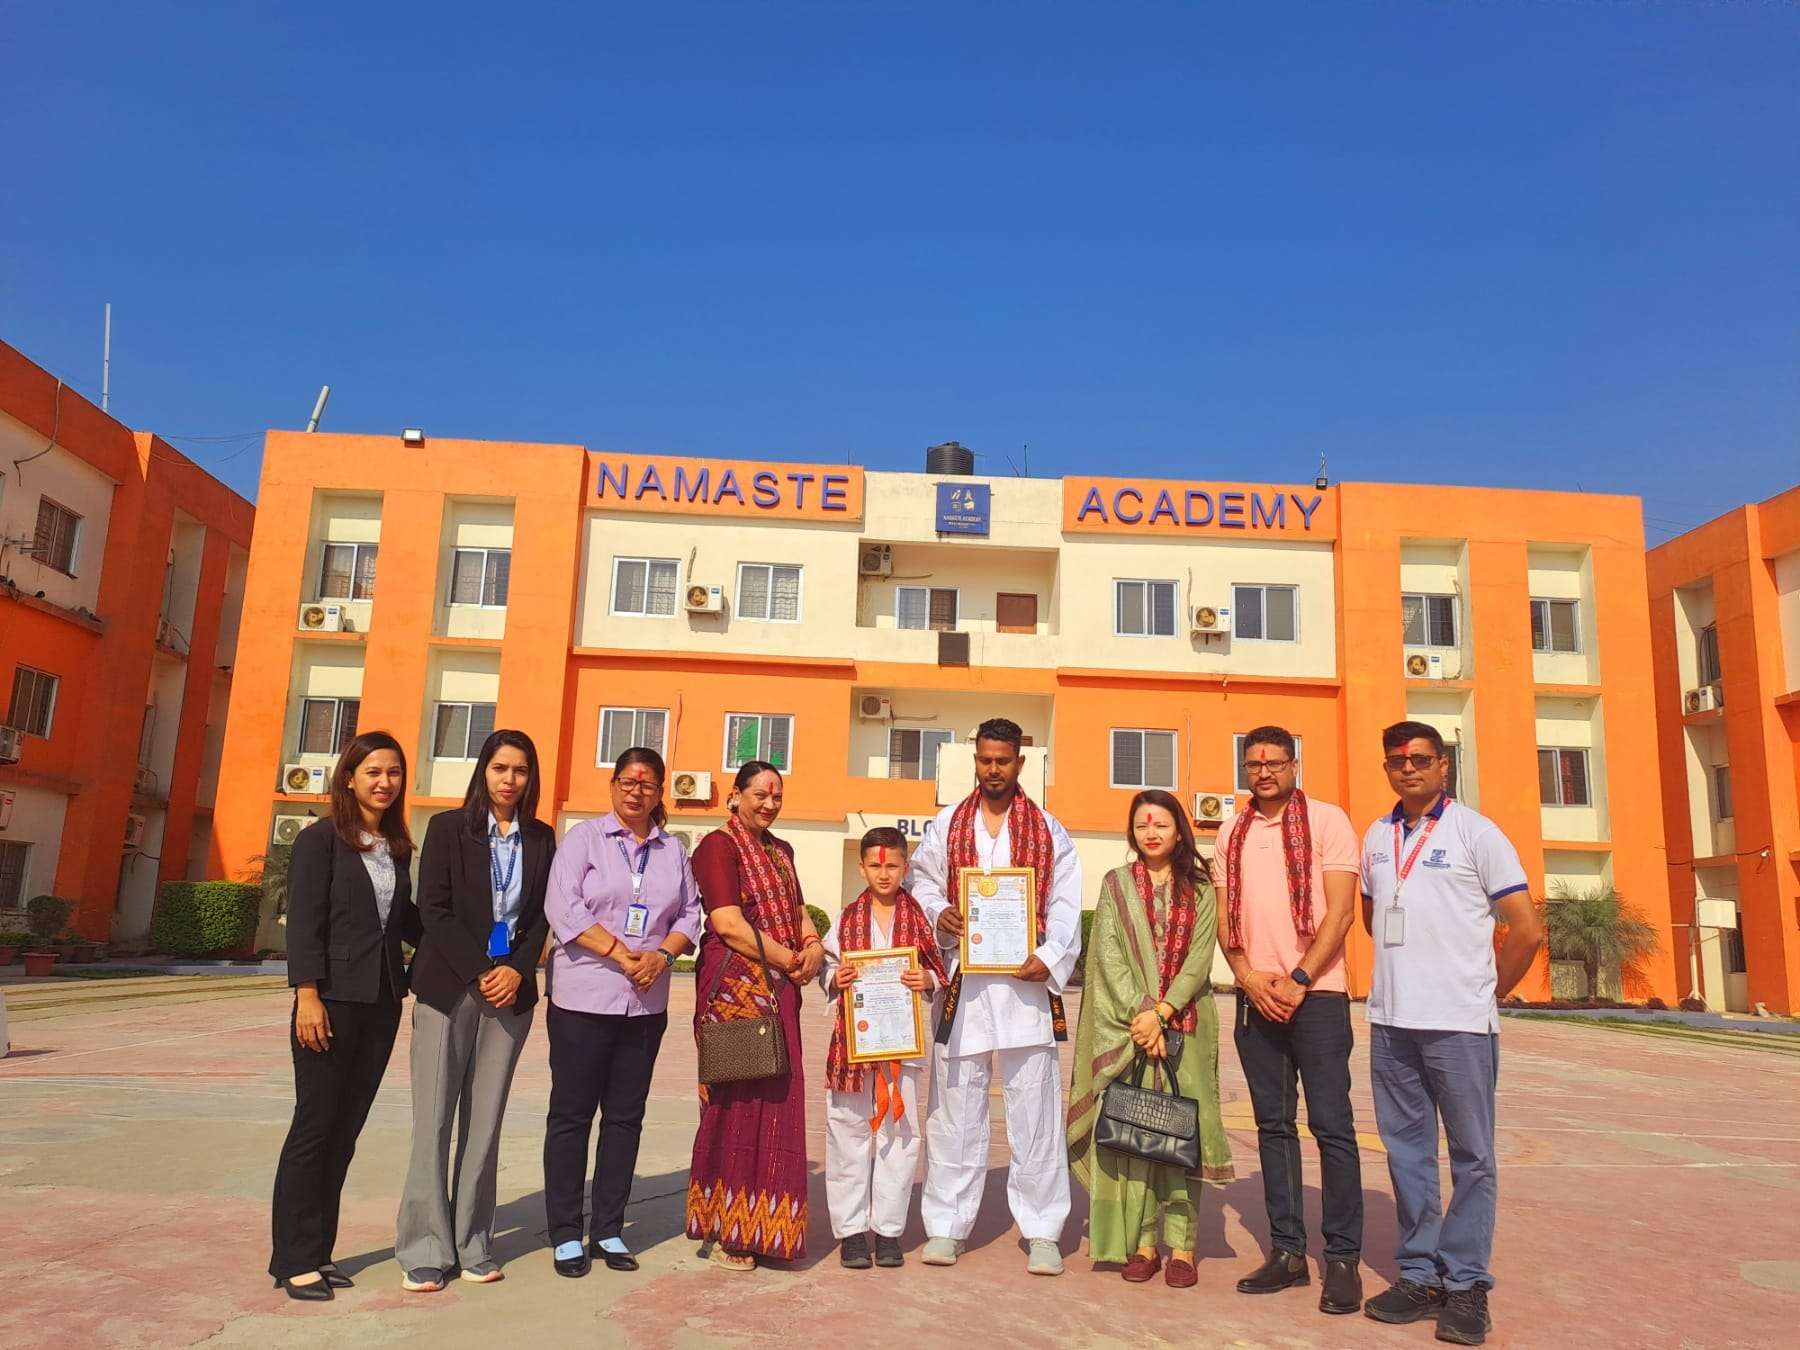 Namaste Academy